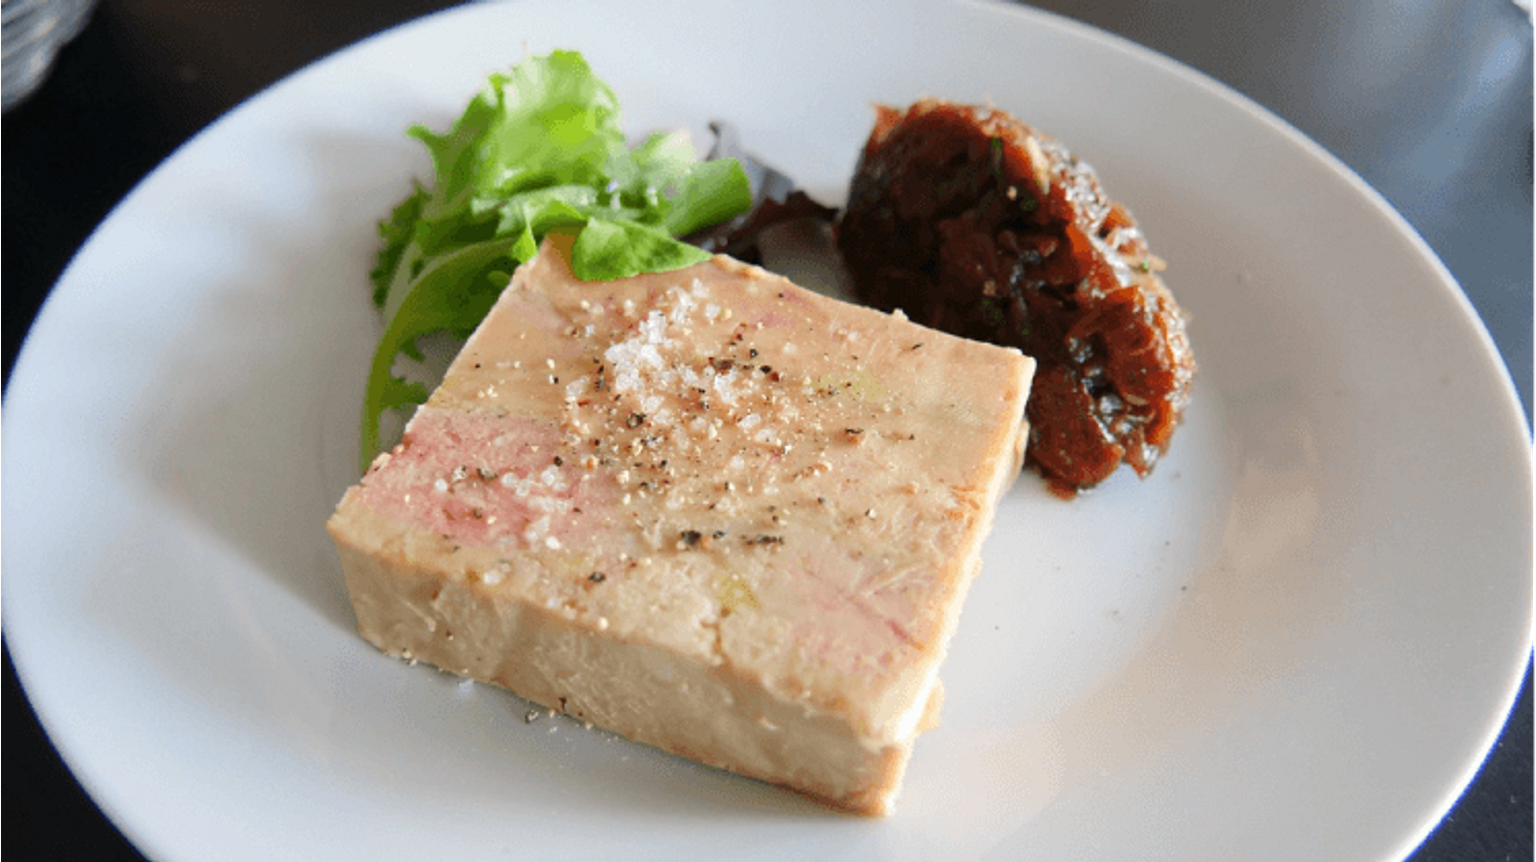 thumbnail for blog article named: Top 5 Bières pour accompagner le foie gras